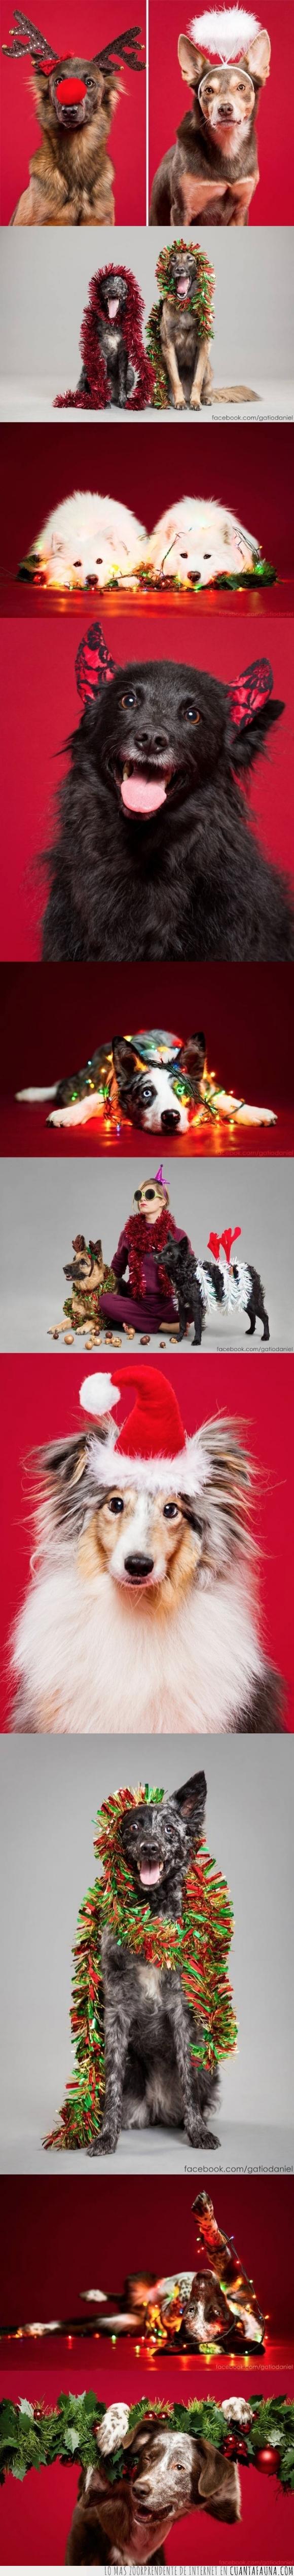 disfraz,gato,mascota,navidad,navideño,perro